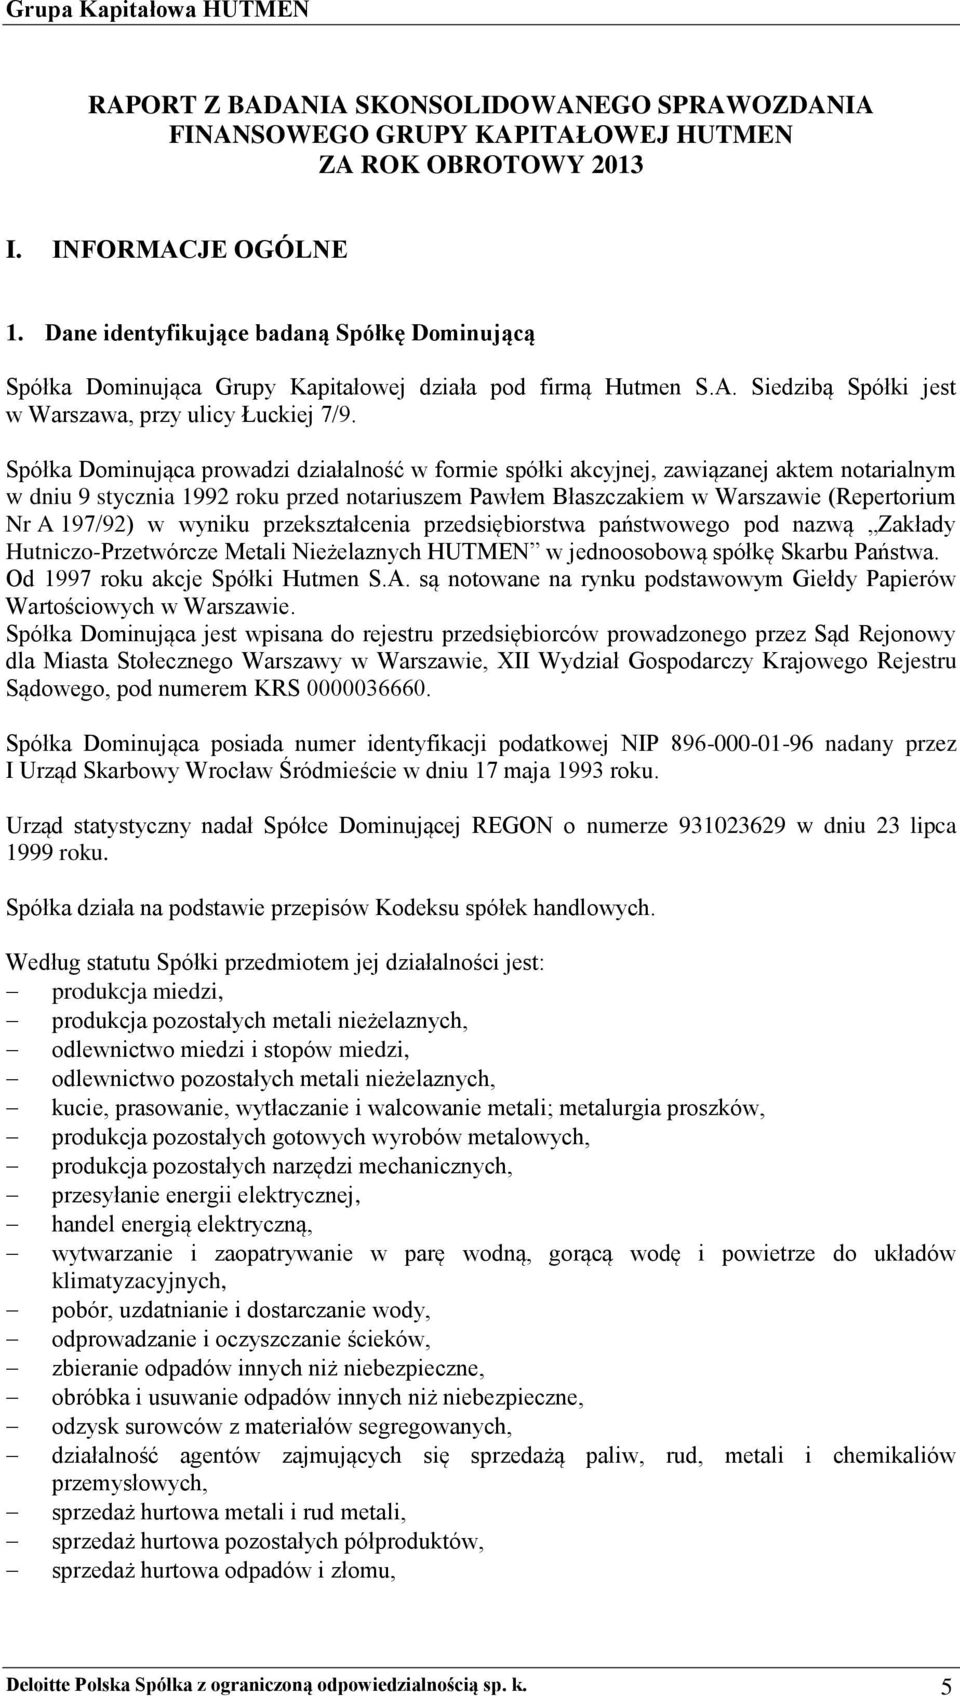 Spółka Dominująca prowadzi działalność w formie spółki akcyjnej, zawiązanej aktem notarialnym w dniu 9 stycznia 1992 roku przed notariuszem Pawłem Błaszczakiem w Warszawie (Repertorium Nr A 197/92) w